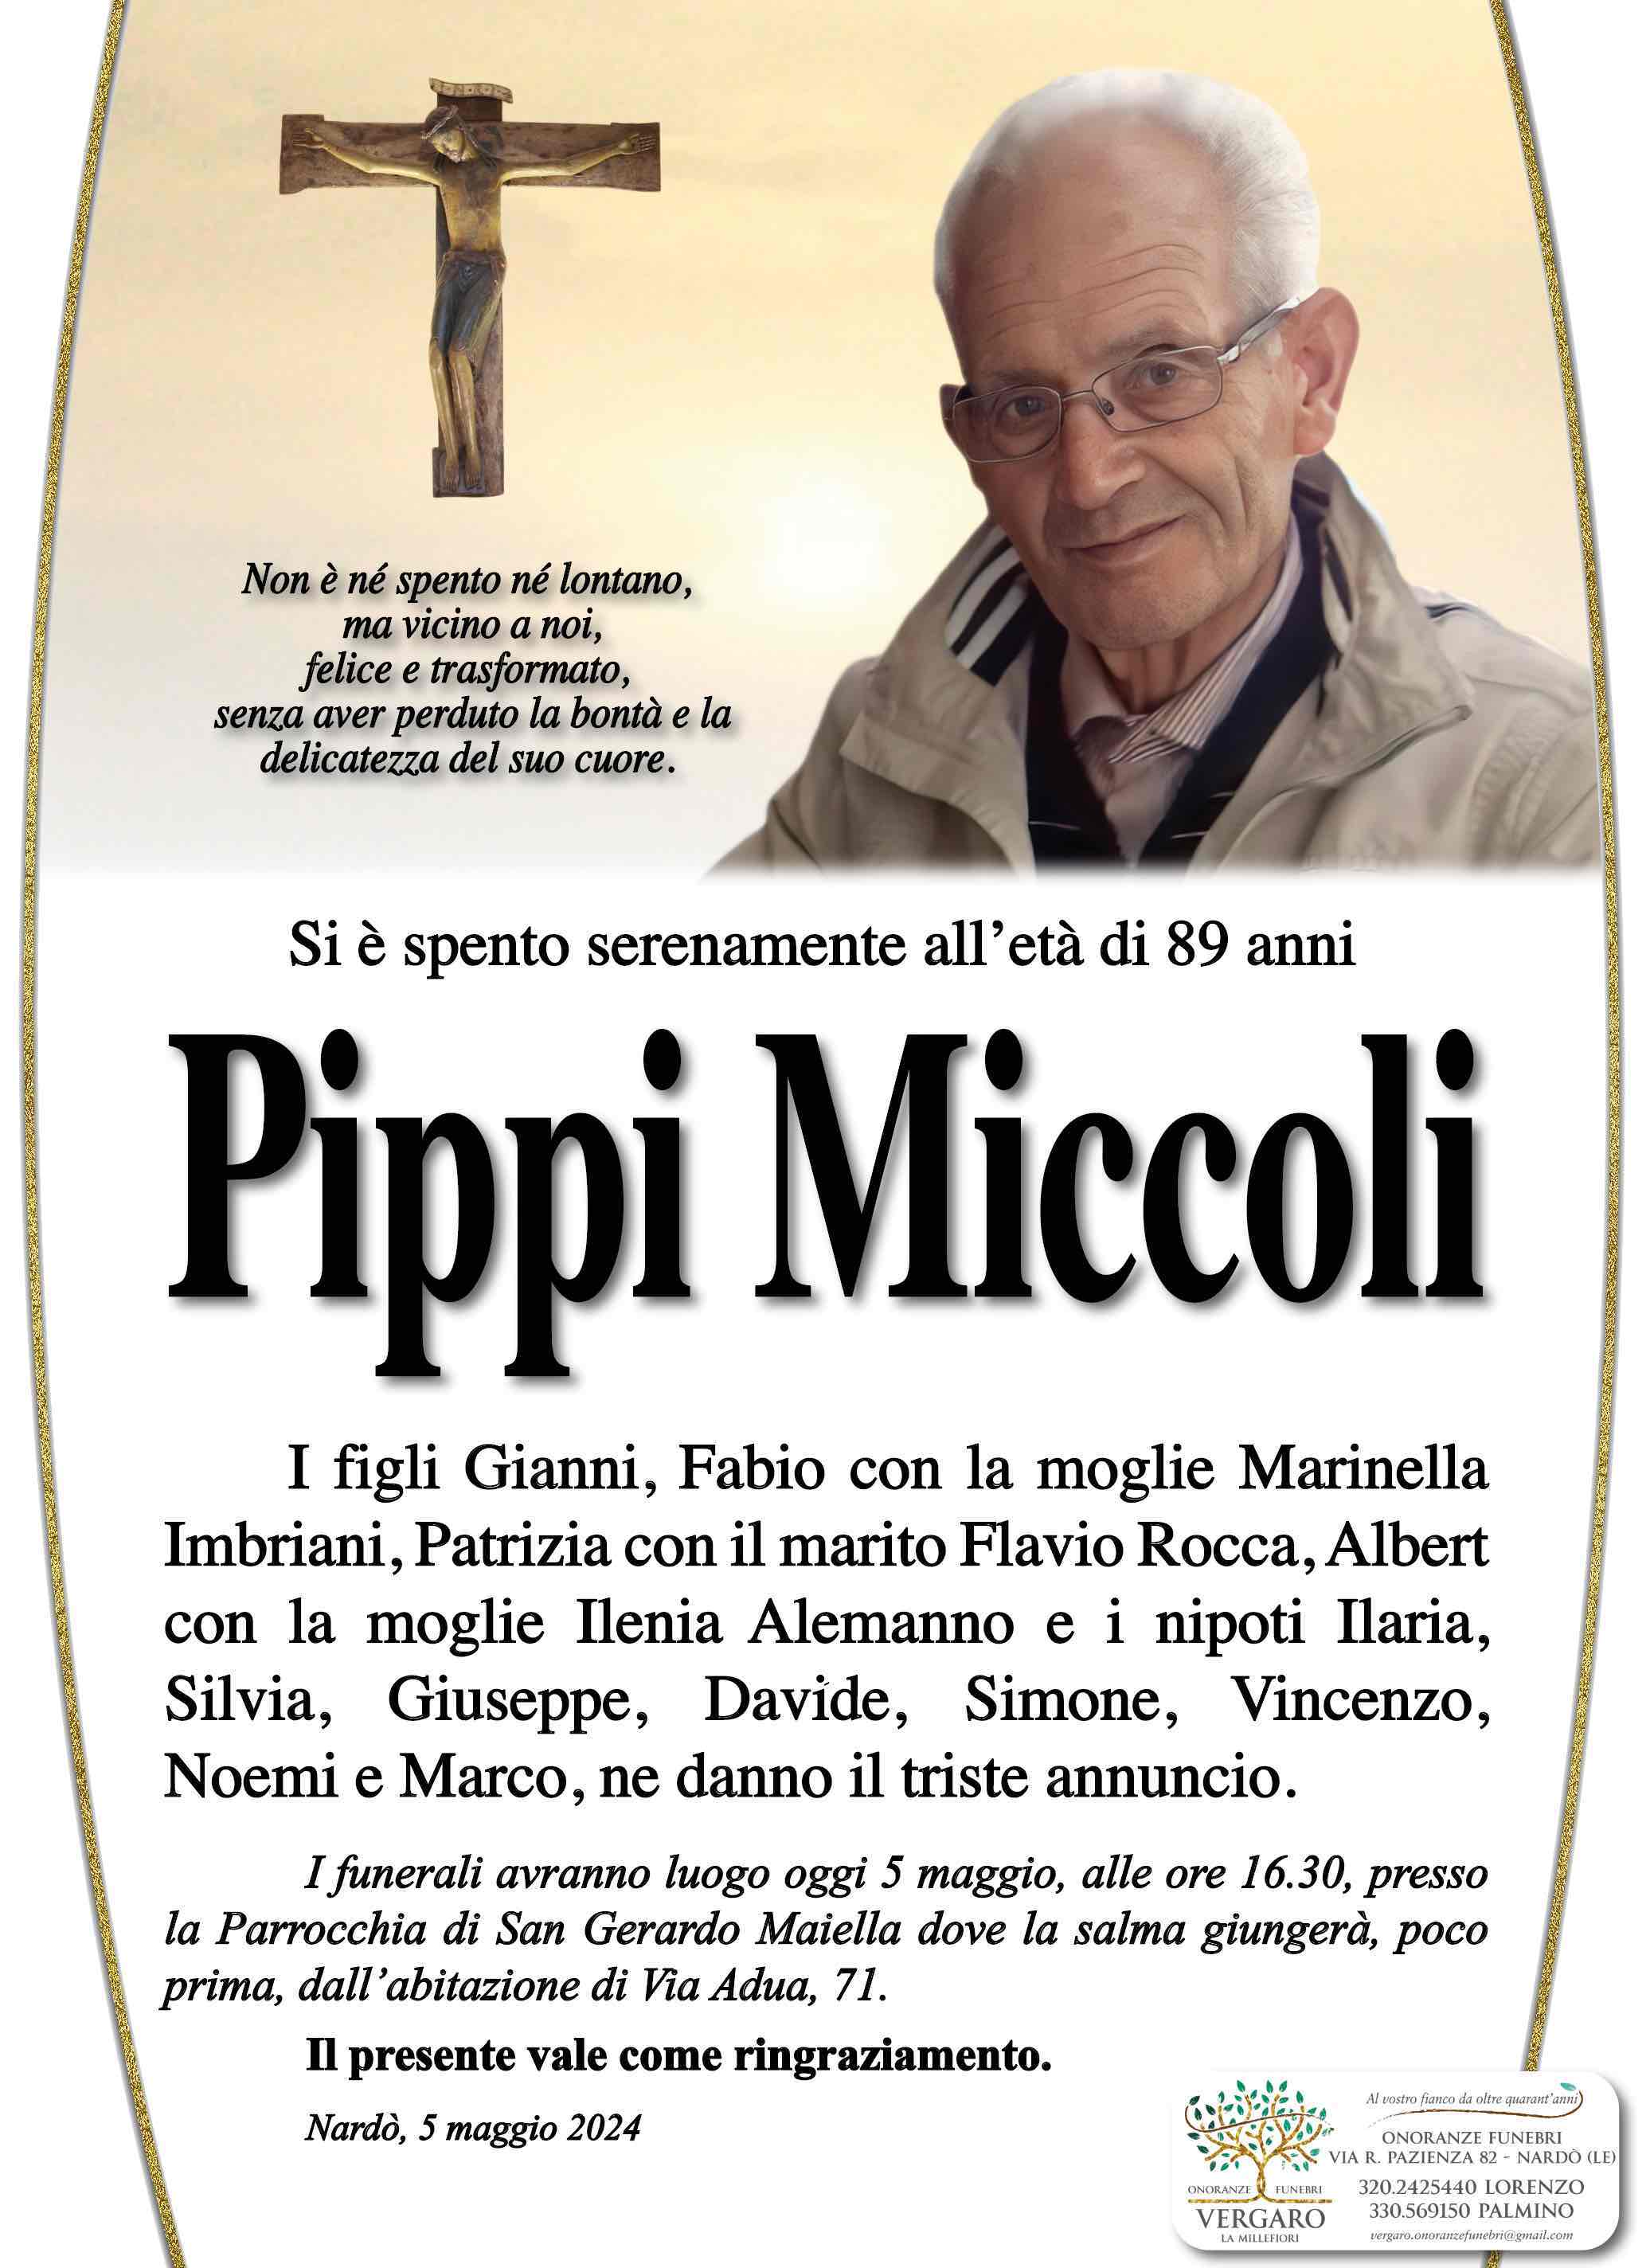 Pippi Miccoli